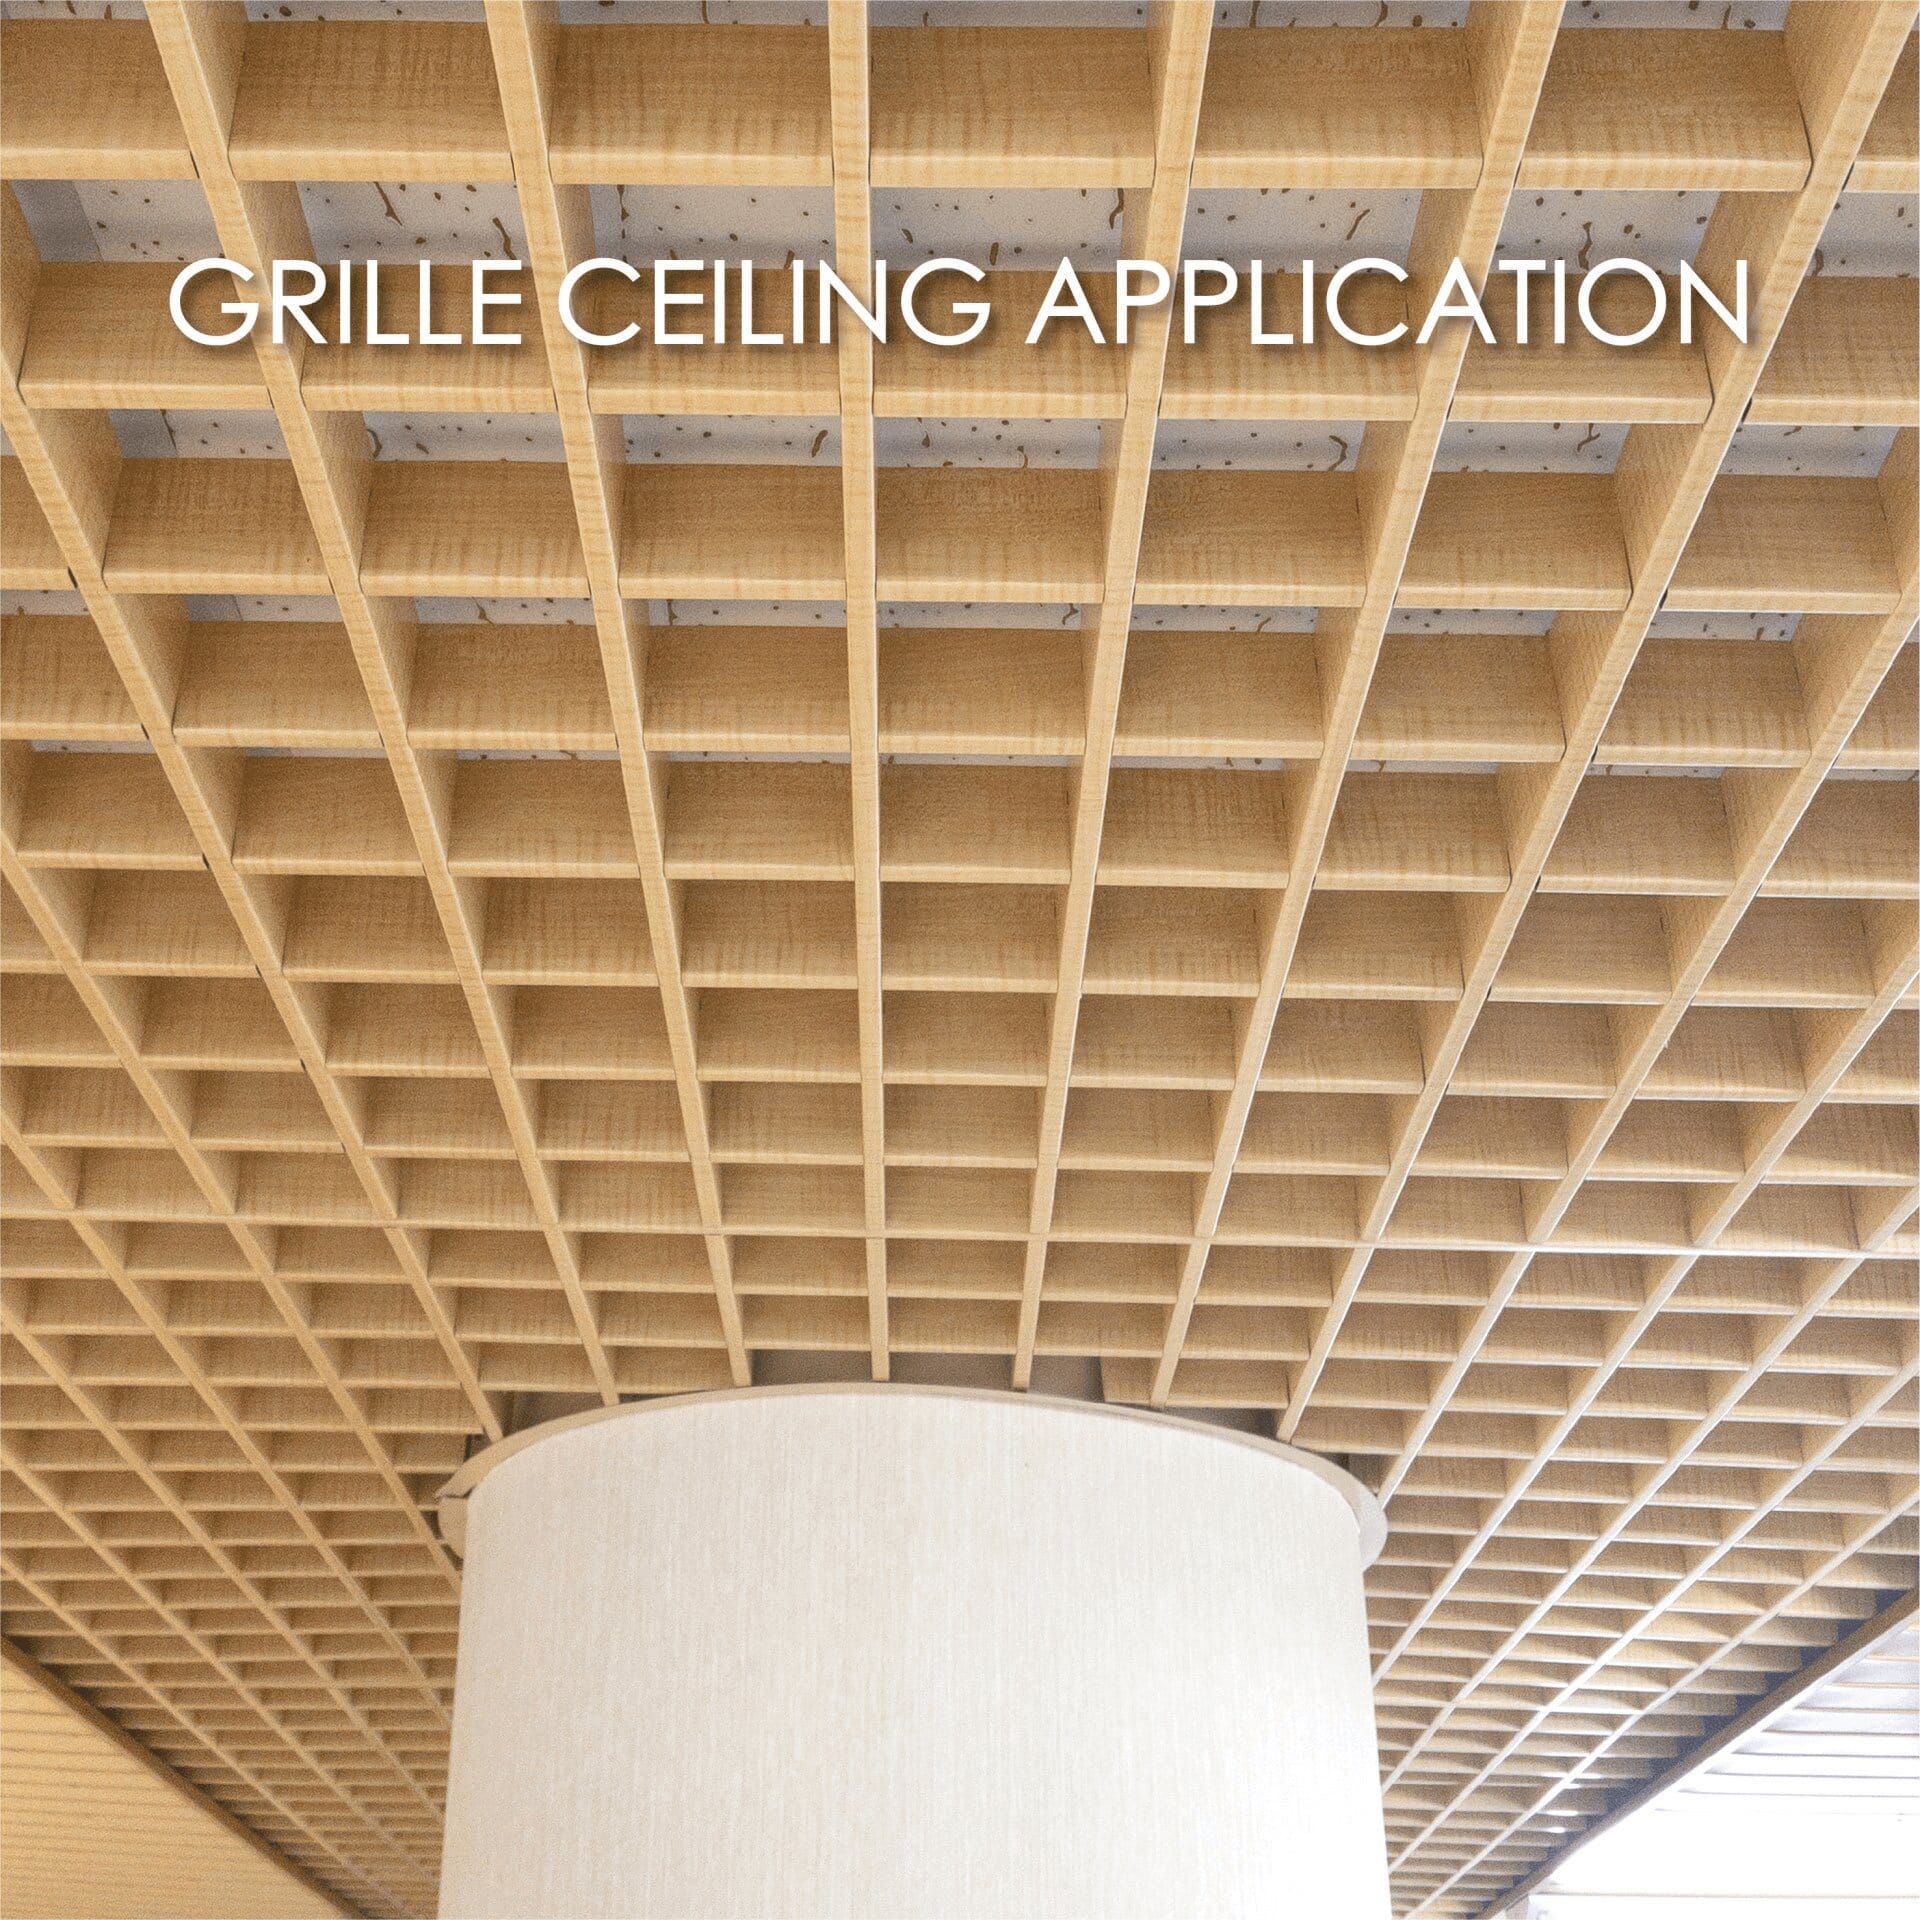 選用覆膜金屬製作格柵天花板能增加裝飾性和耐用性